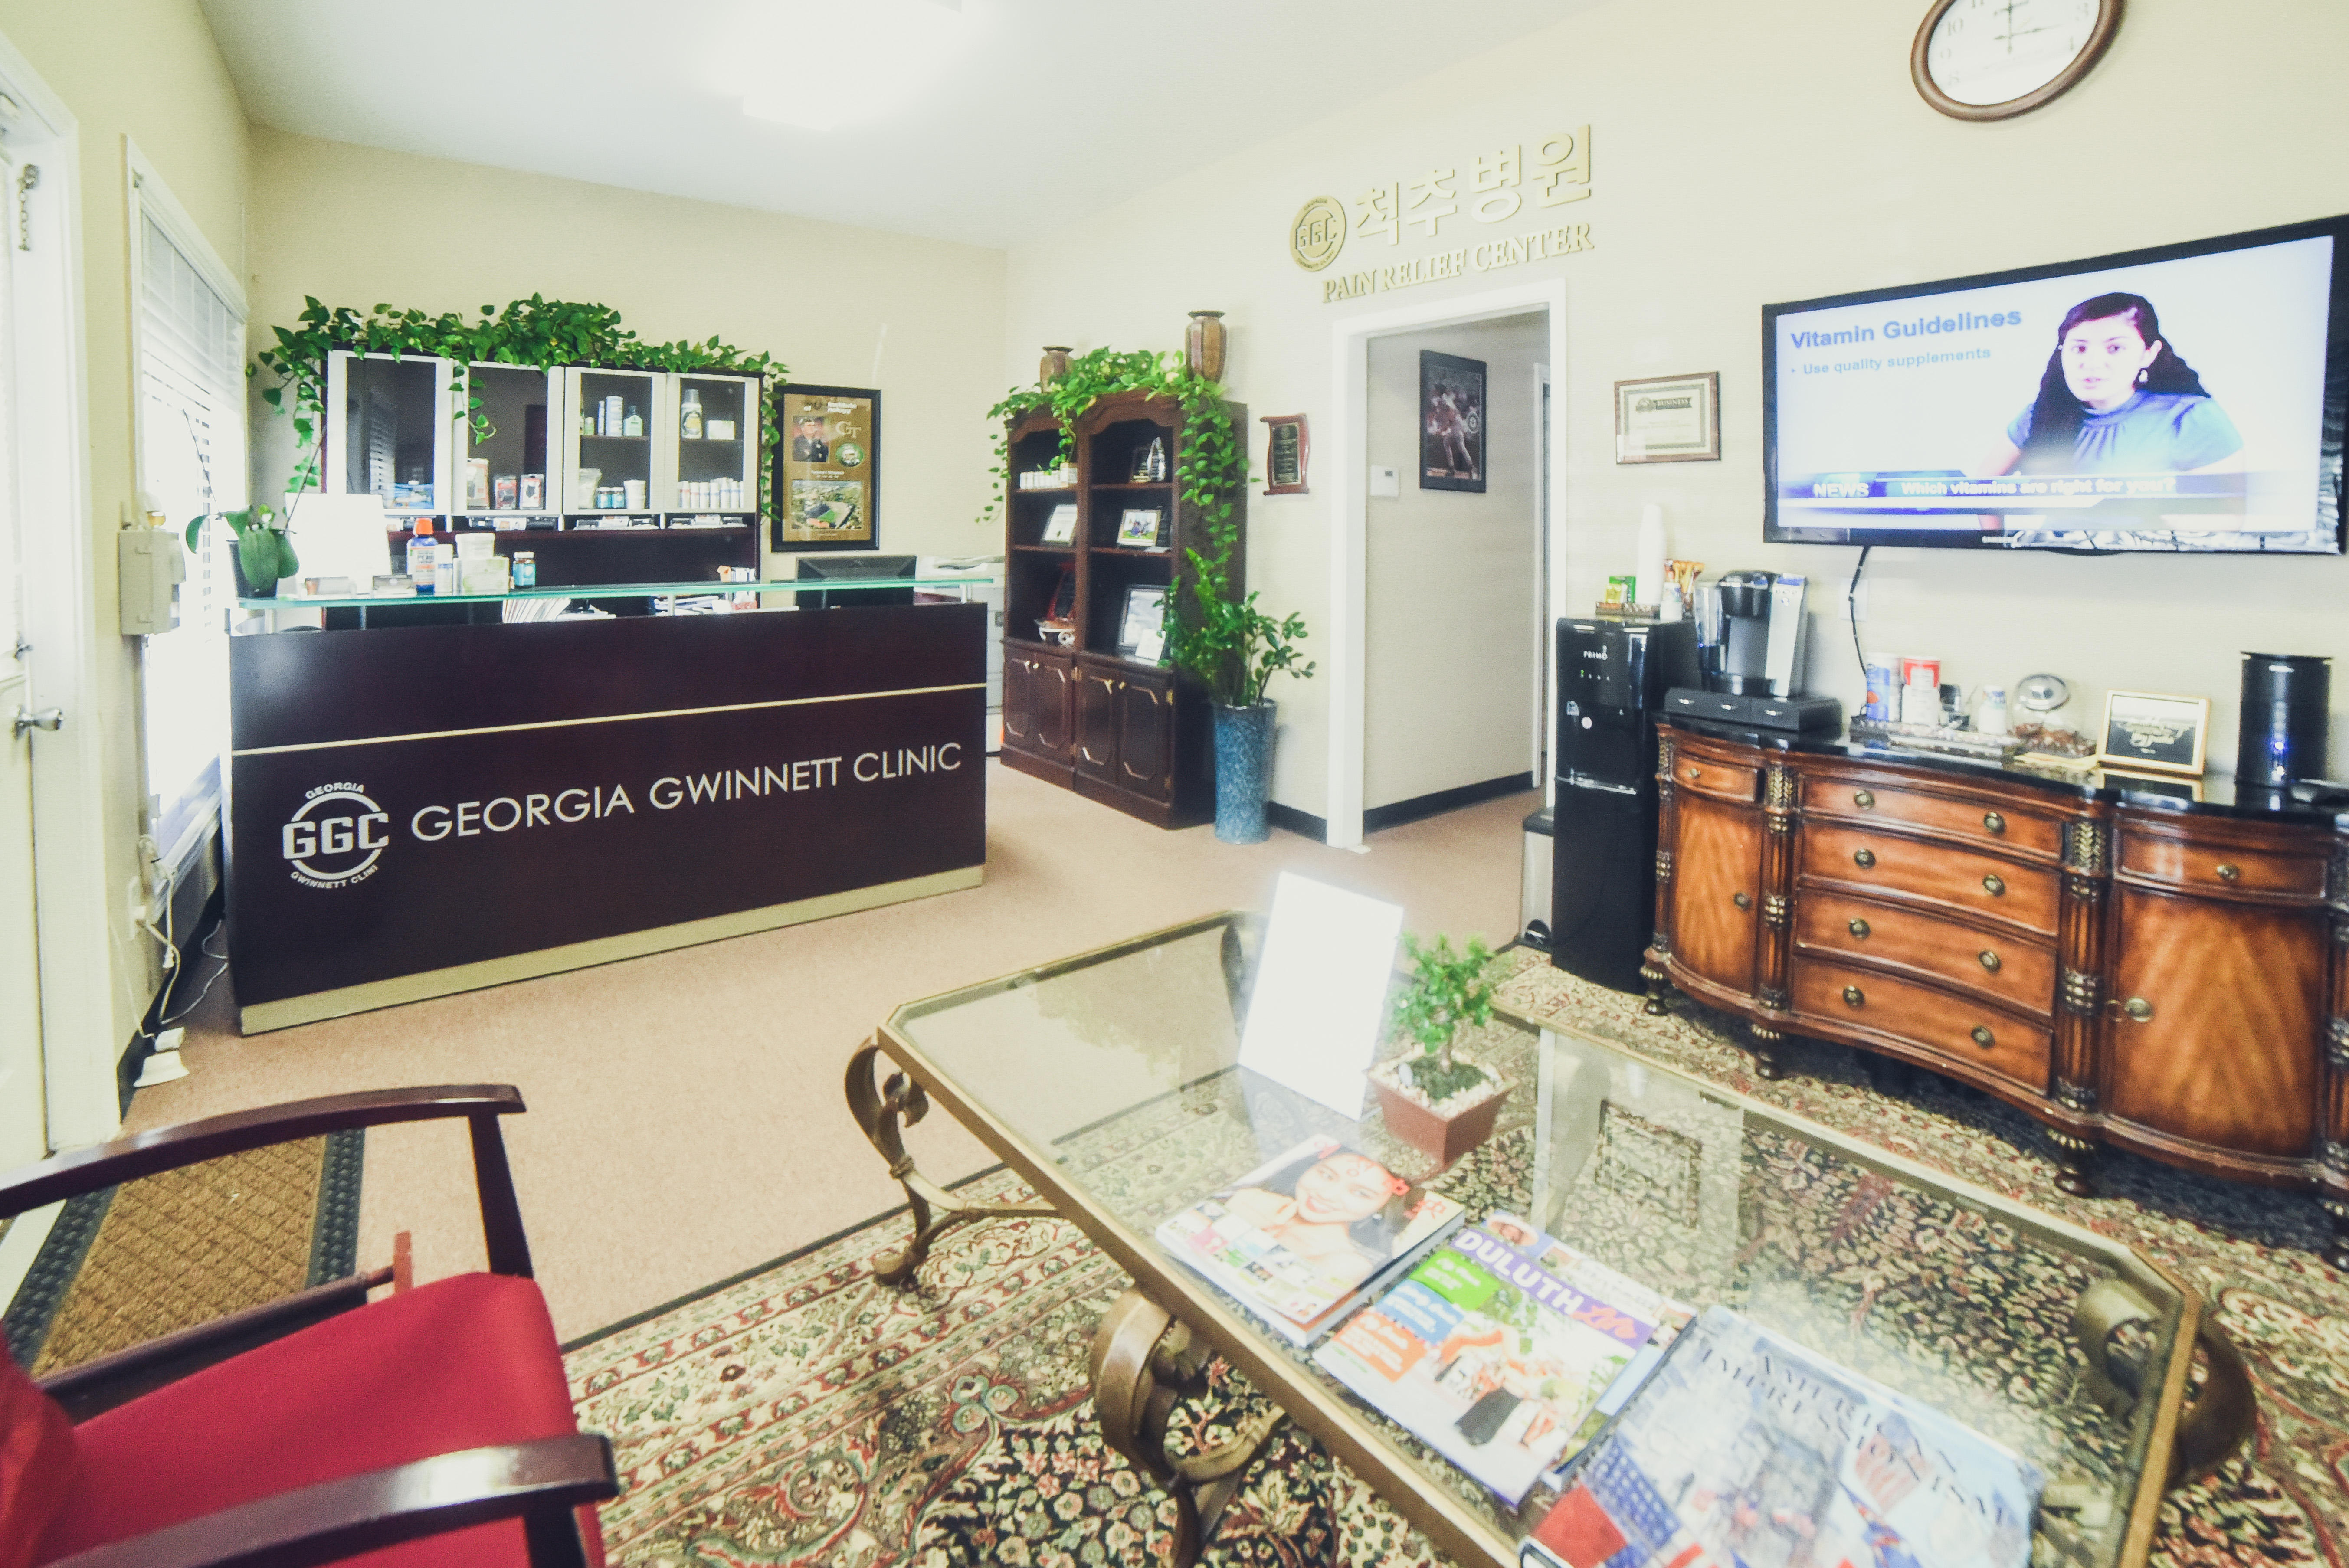 Georgia Gwinnett Chiropractic Clinic Photo